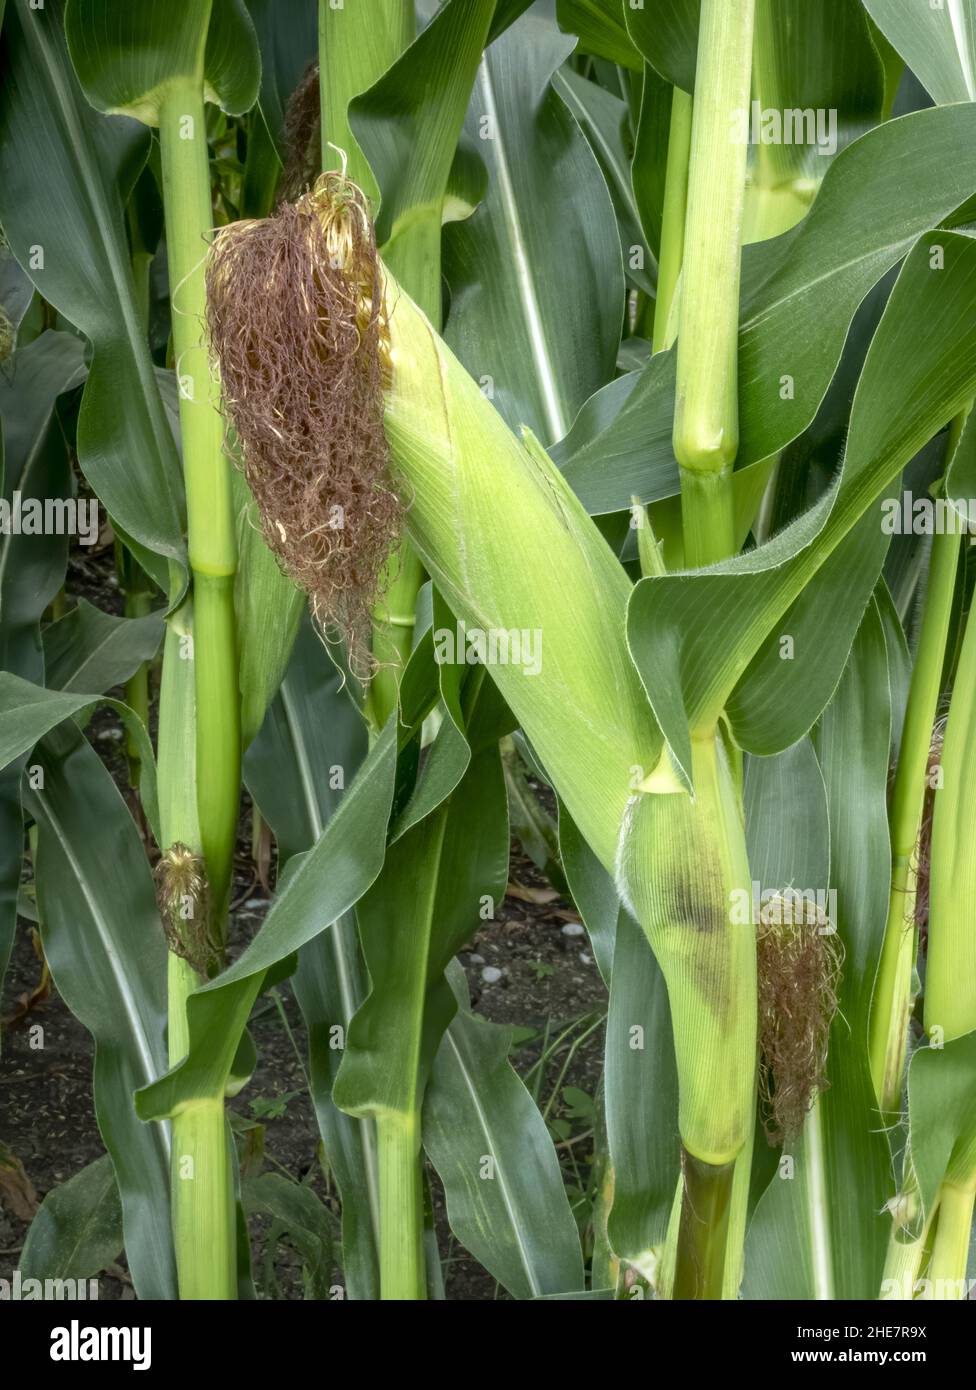 Corn (Zea mays) Stock Photo